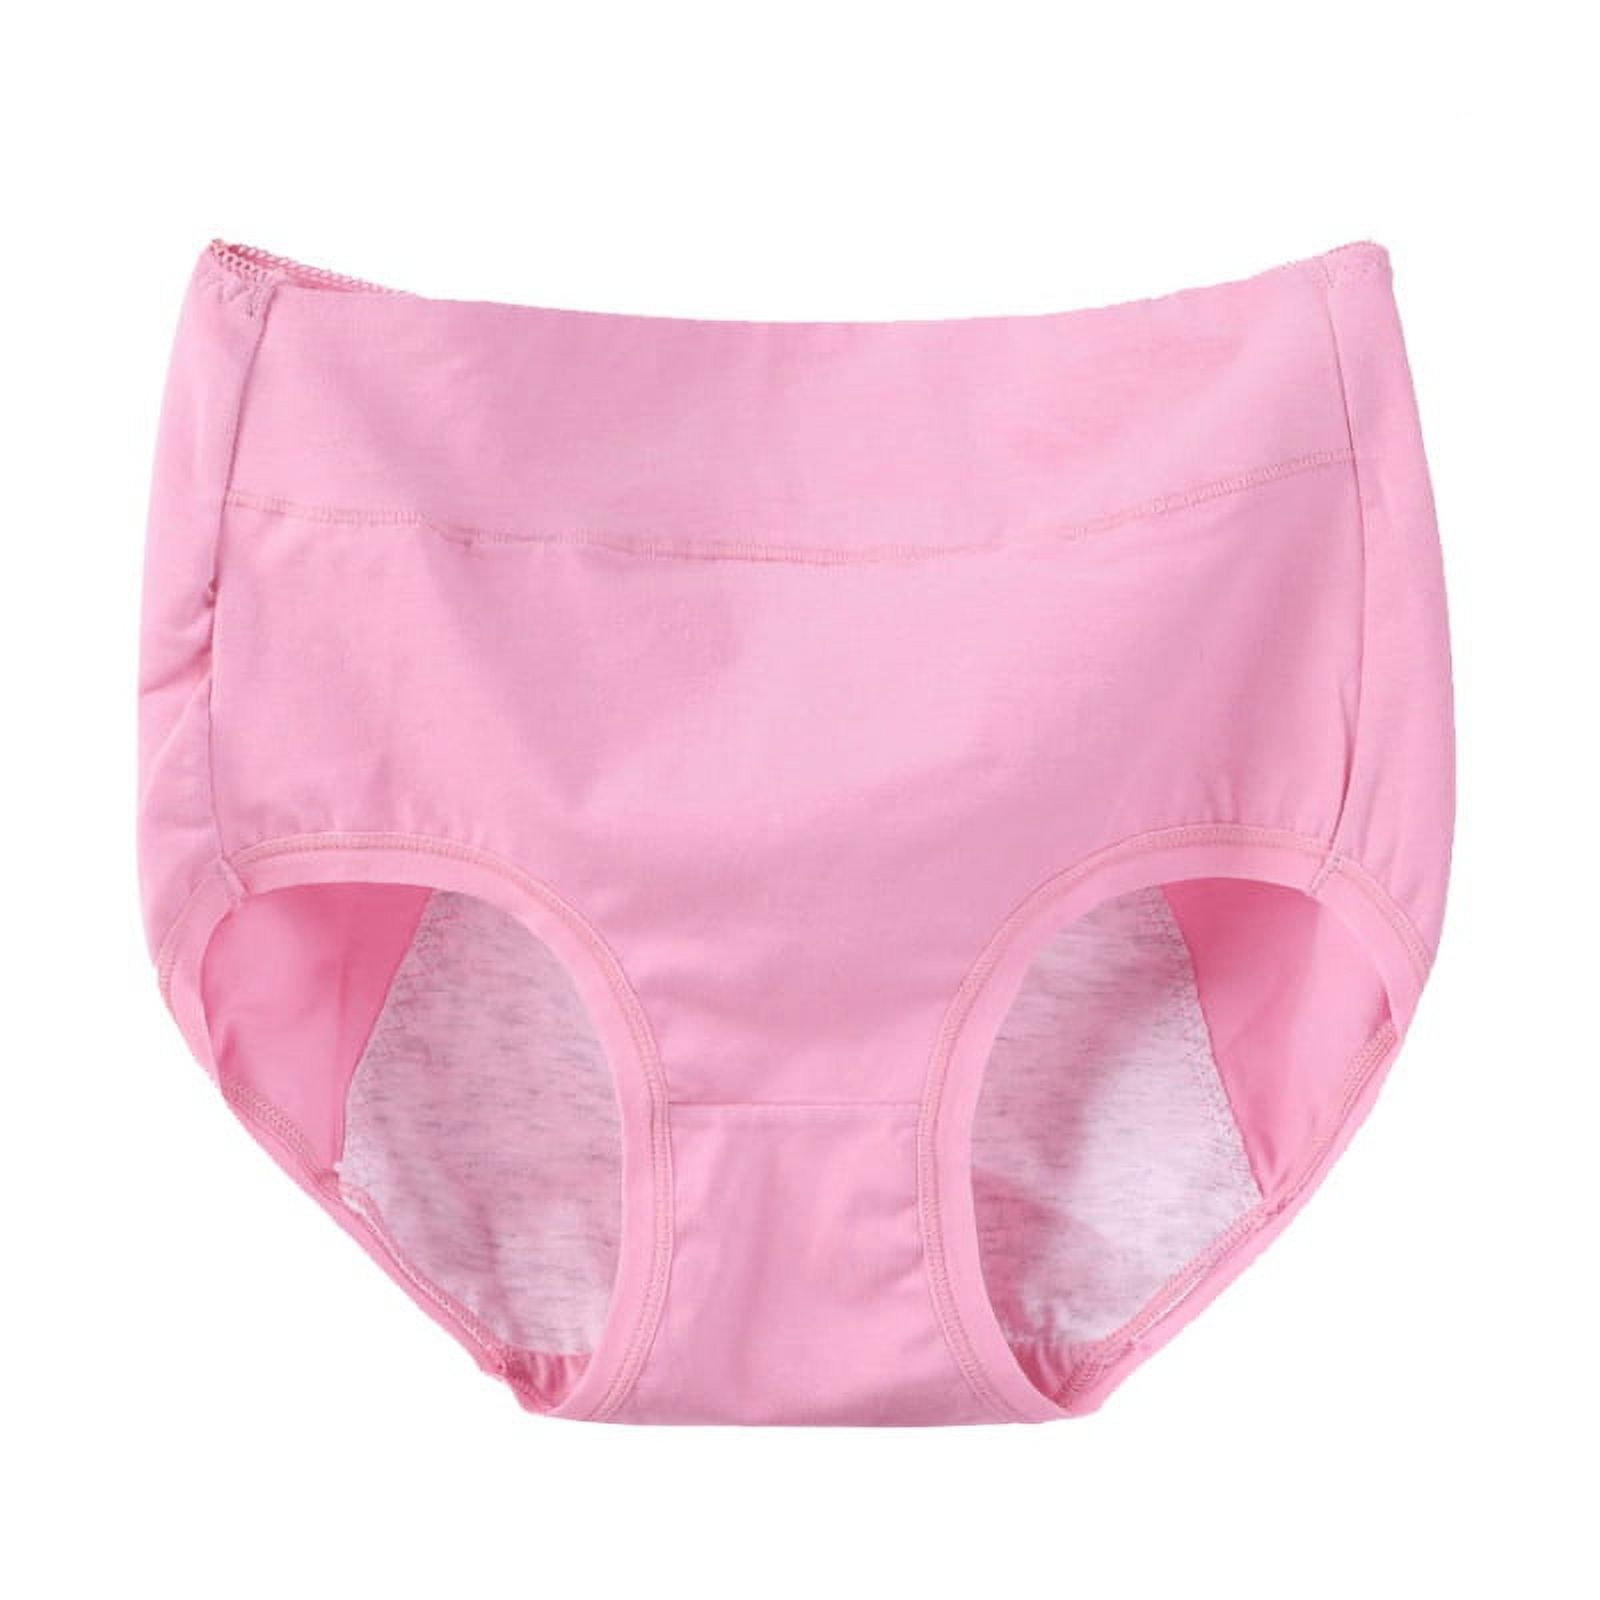 Leak Proof Menstrual Panties Women Heavy Absorbency Four-layer Leakproof  Women Period Underwear Women Lingerie Panties 2Colors - AliExpress